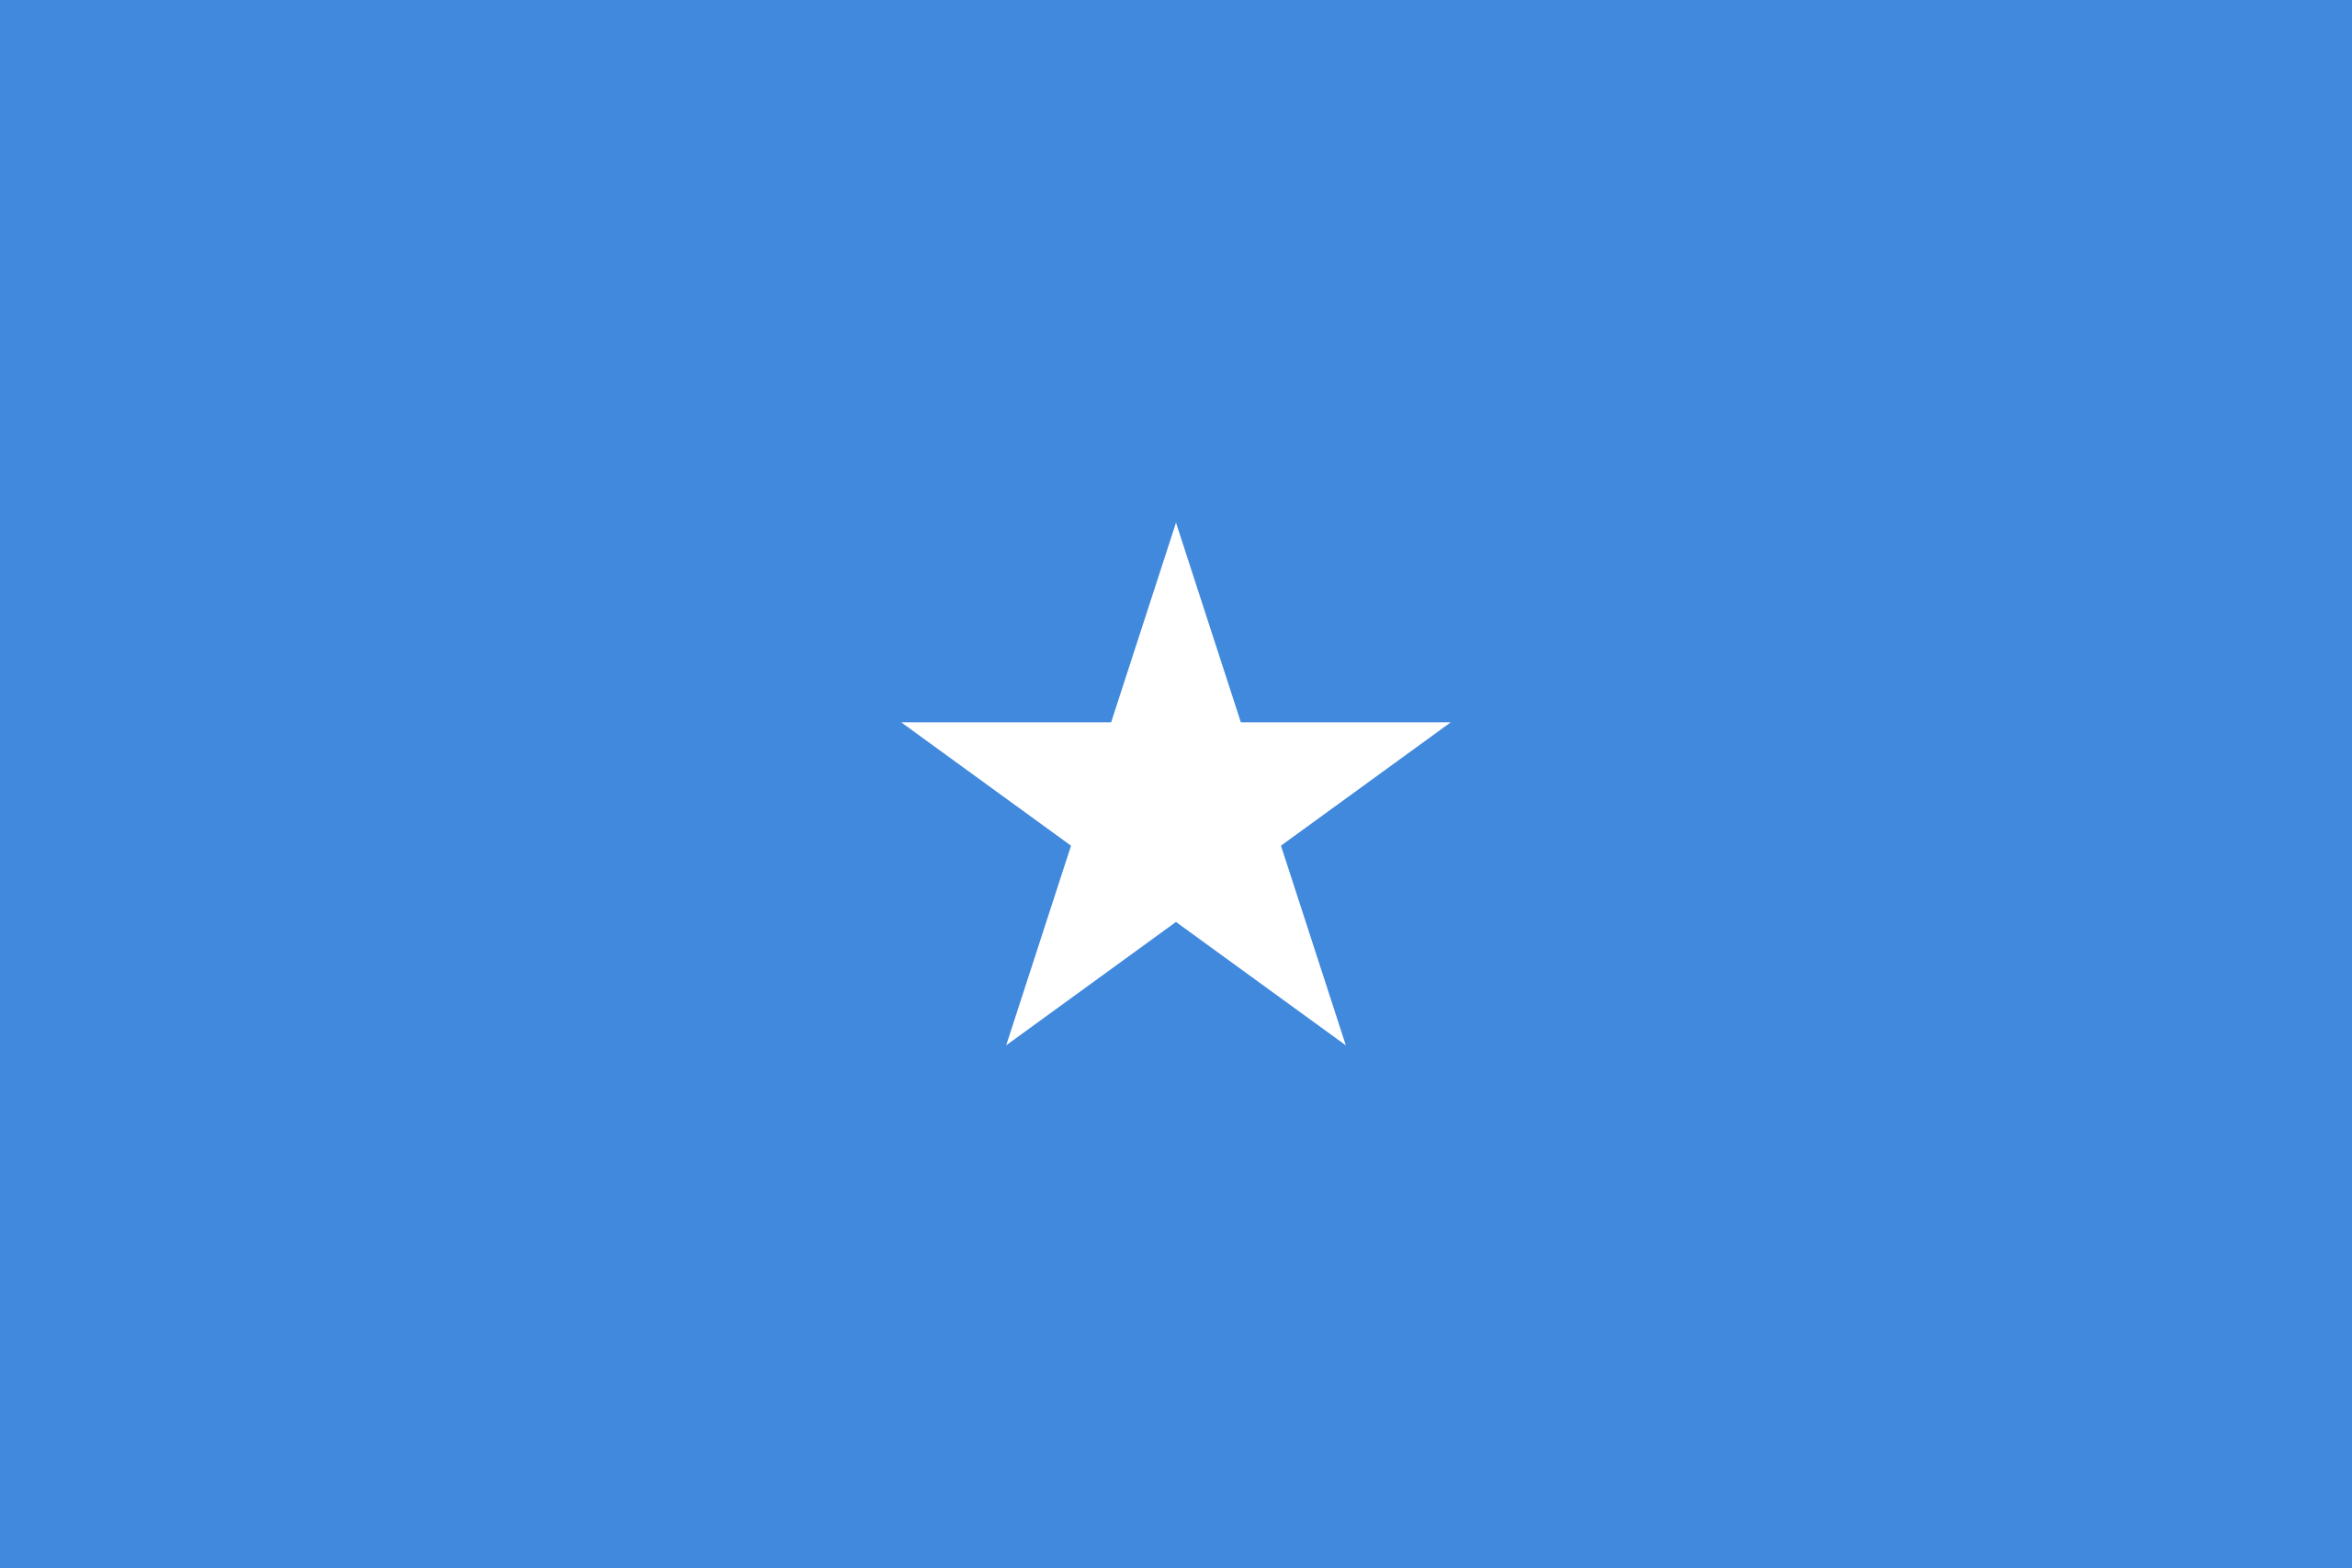 Somalia's flag